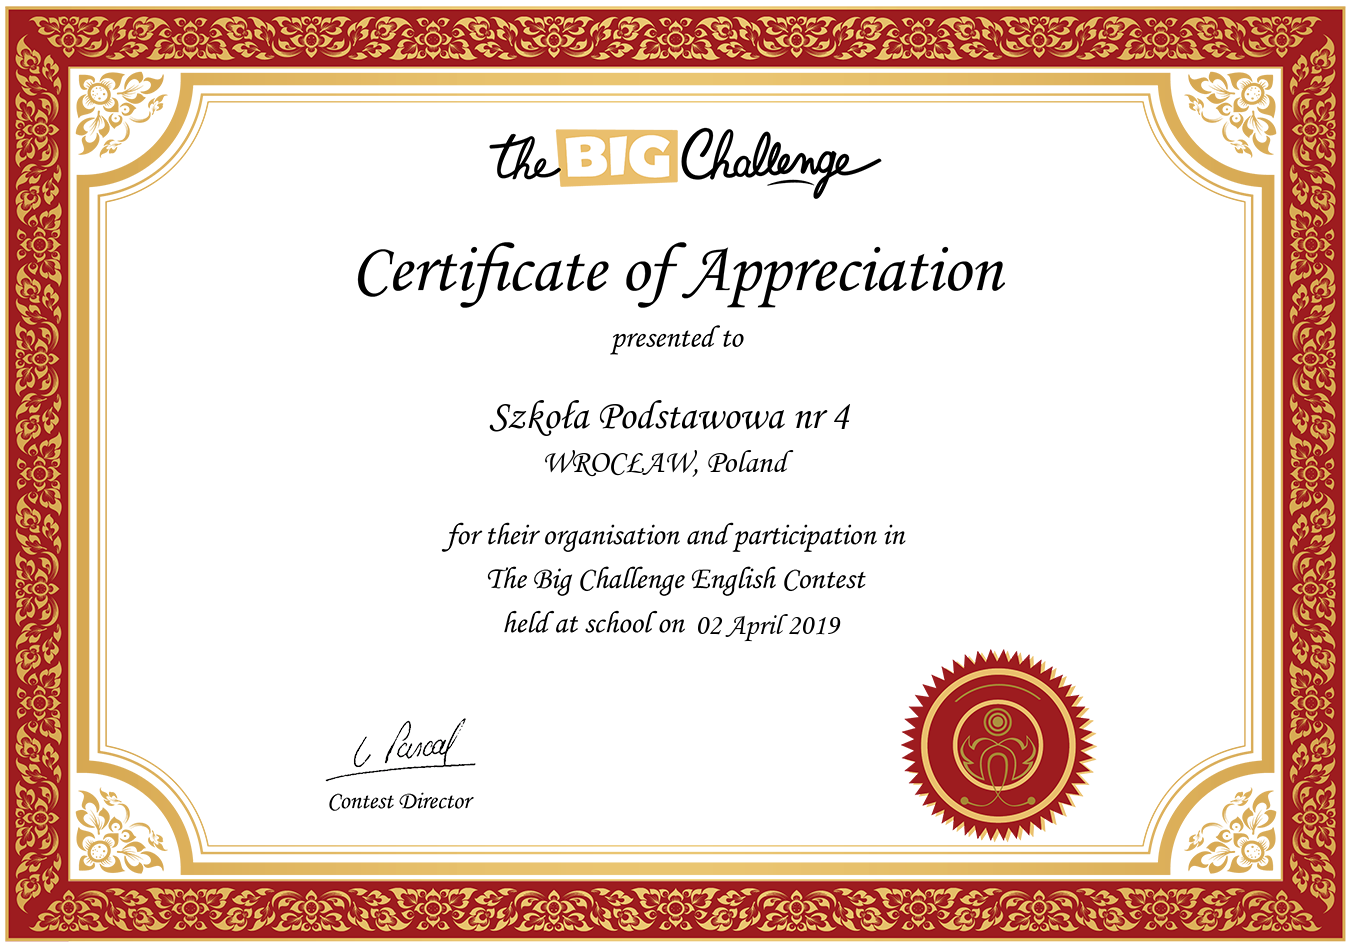 Made certificate. Certificate of Appreciation. Certificate 2020. Certificate for Appreciation. Certificate шаблон.